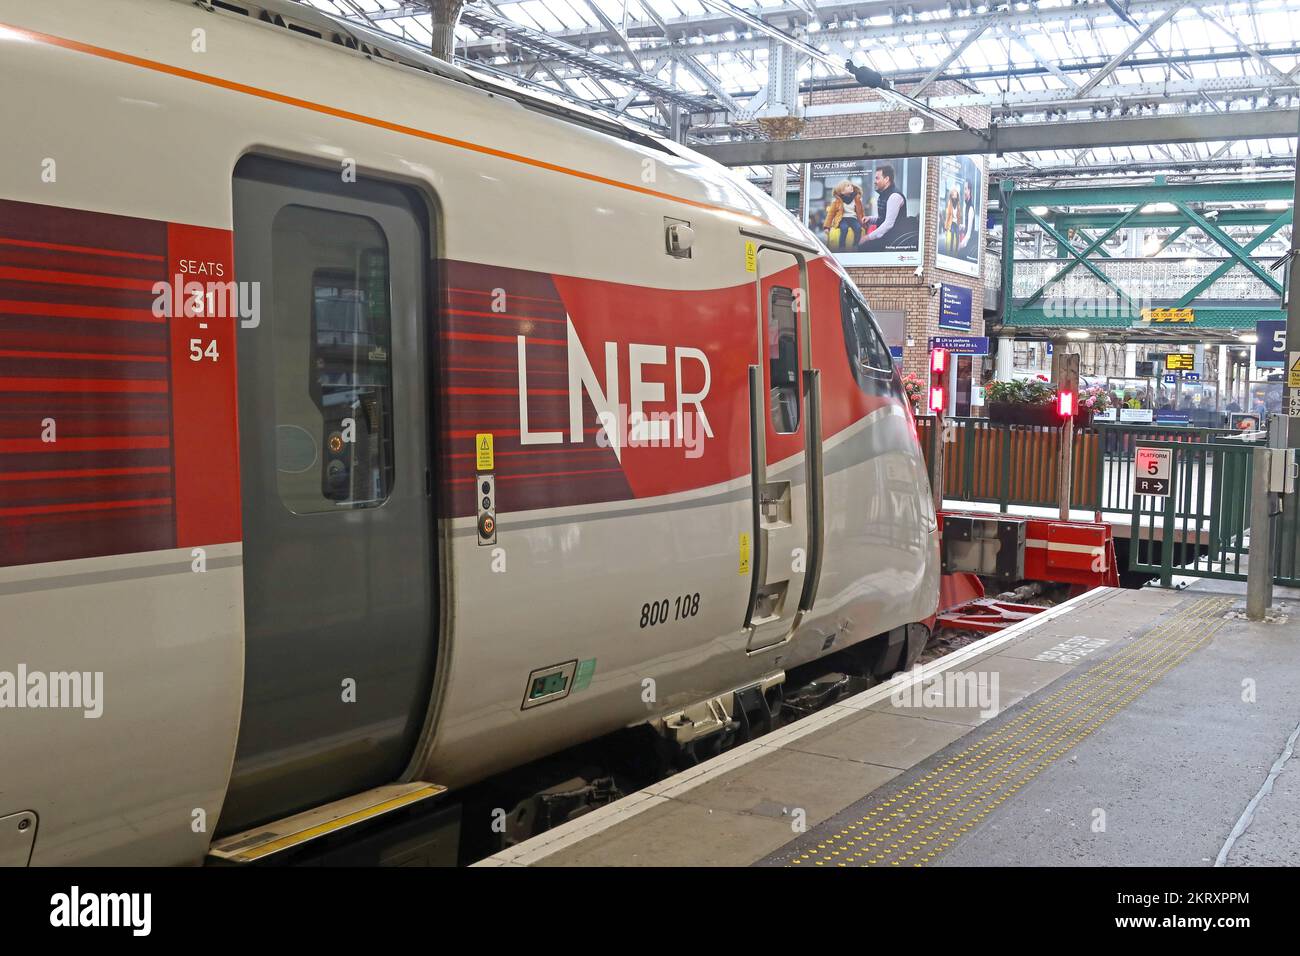 LNER,London North Eastern Railway train 800108 Azuma Engine, à la gare de Waverley, centre-ville d'Edimbourg, Écosse, Royaume-Uni, EH1 3EG Banque D'Images